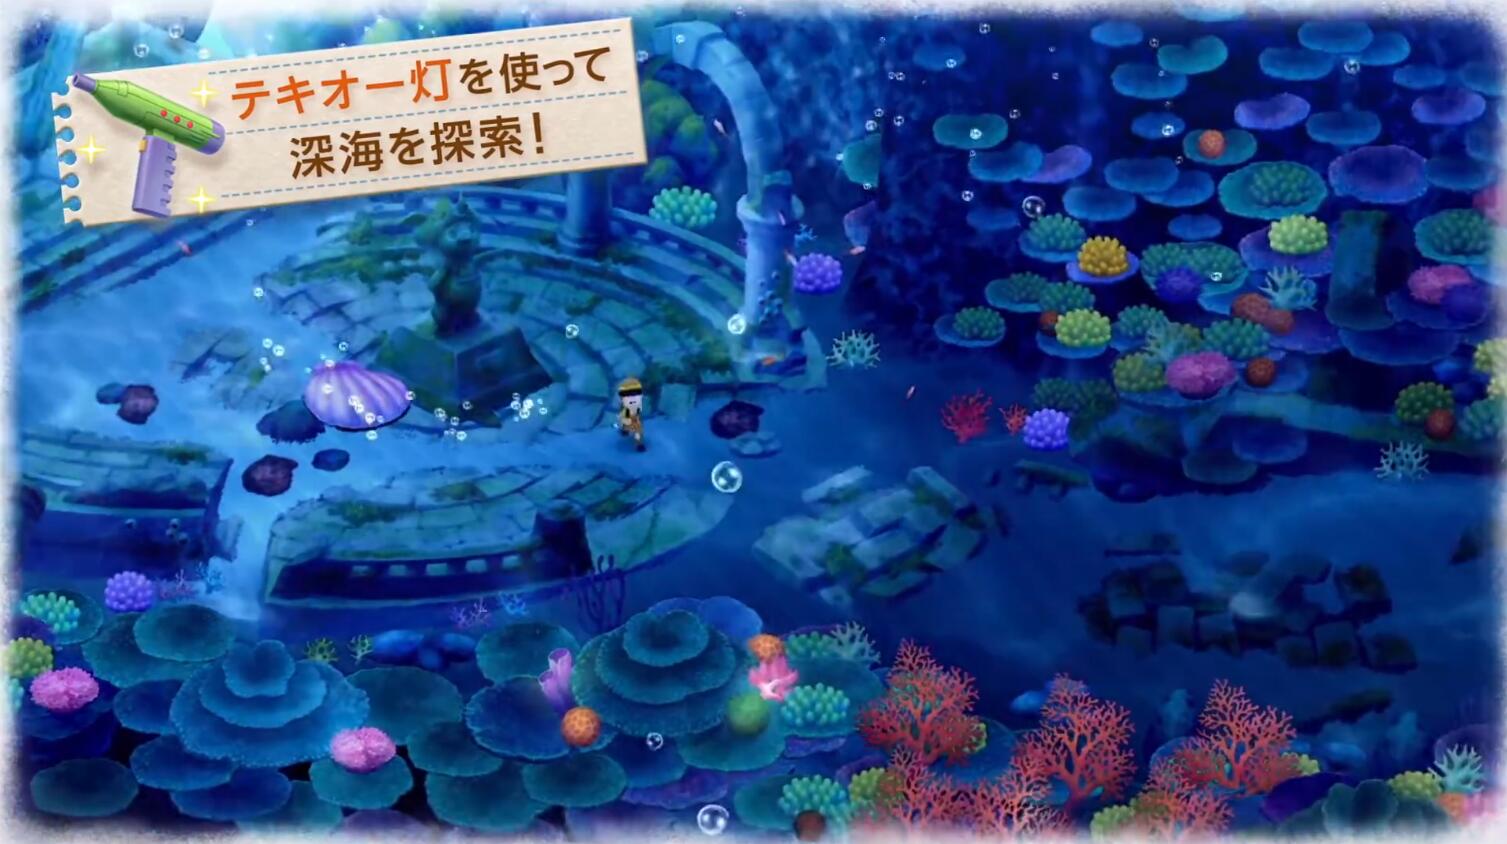 《哆啦A夢 牧場物語 大自然的王國與大家的家》11月2日發售